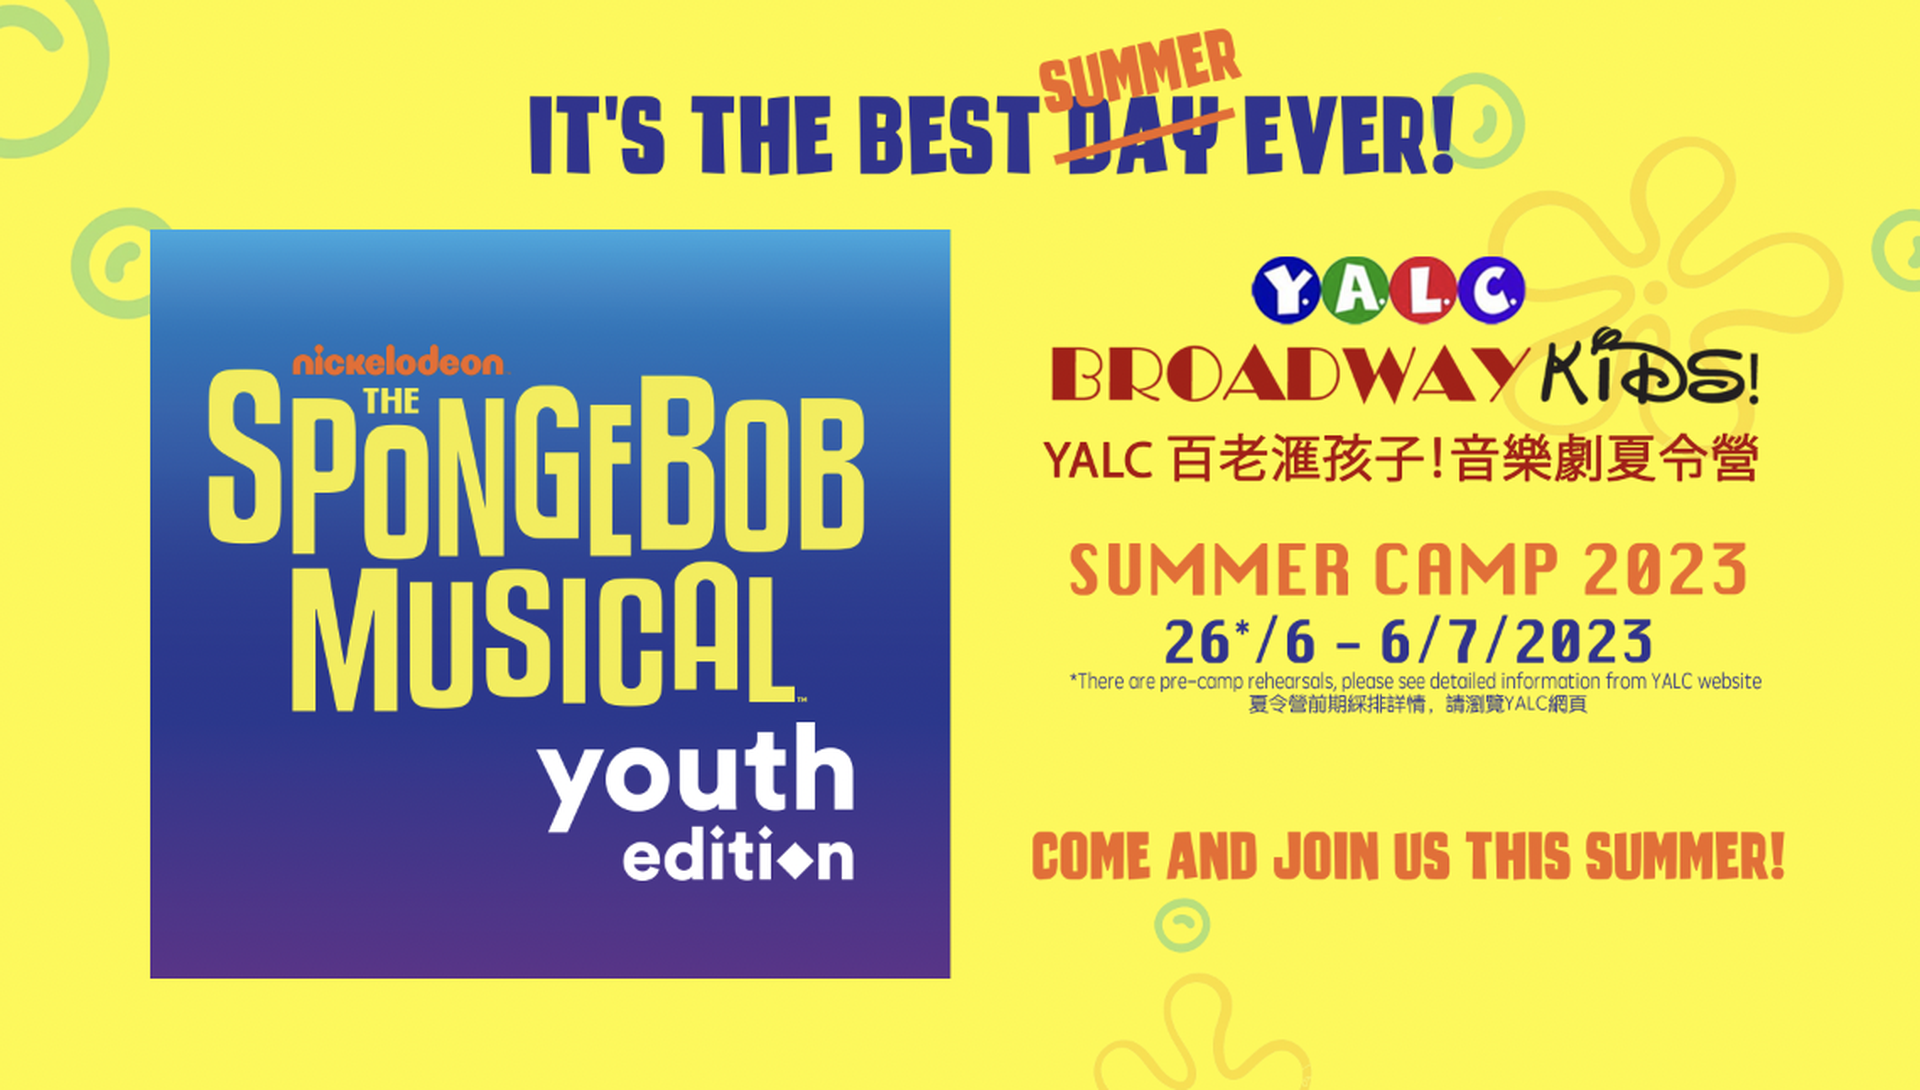 YALC 百老匯孩子! 音樂劇夏令營 Broadway Kids Summer Camp 2023｜獨家93折 